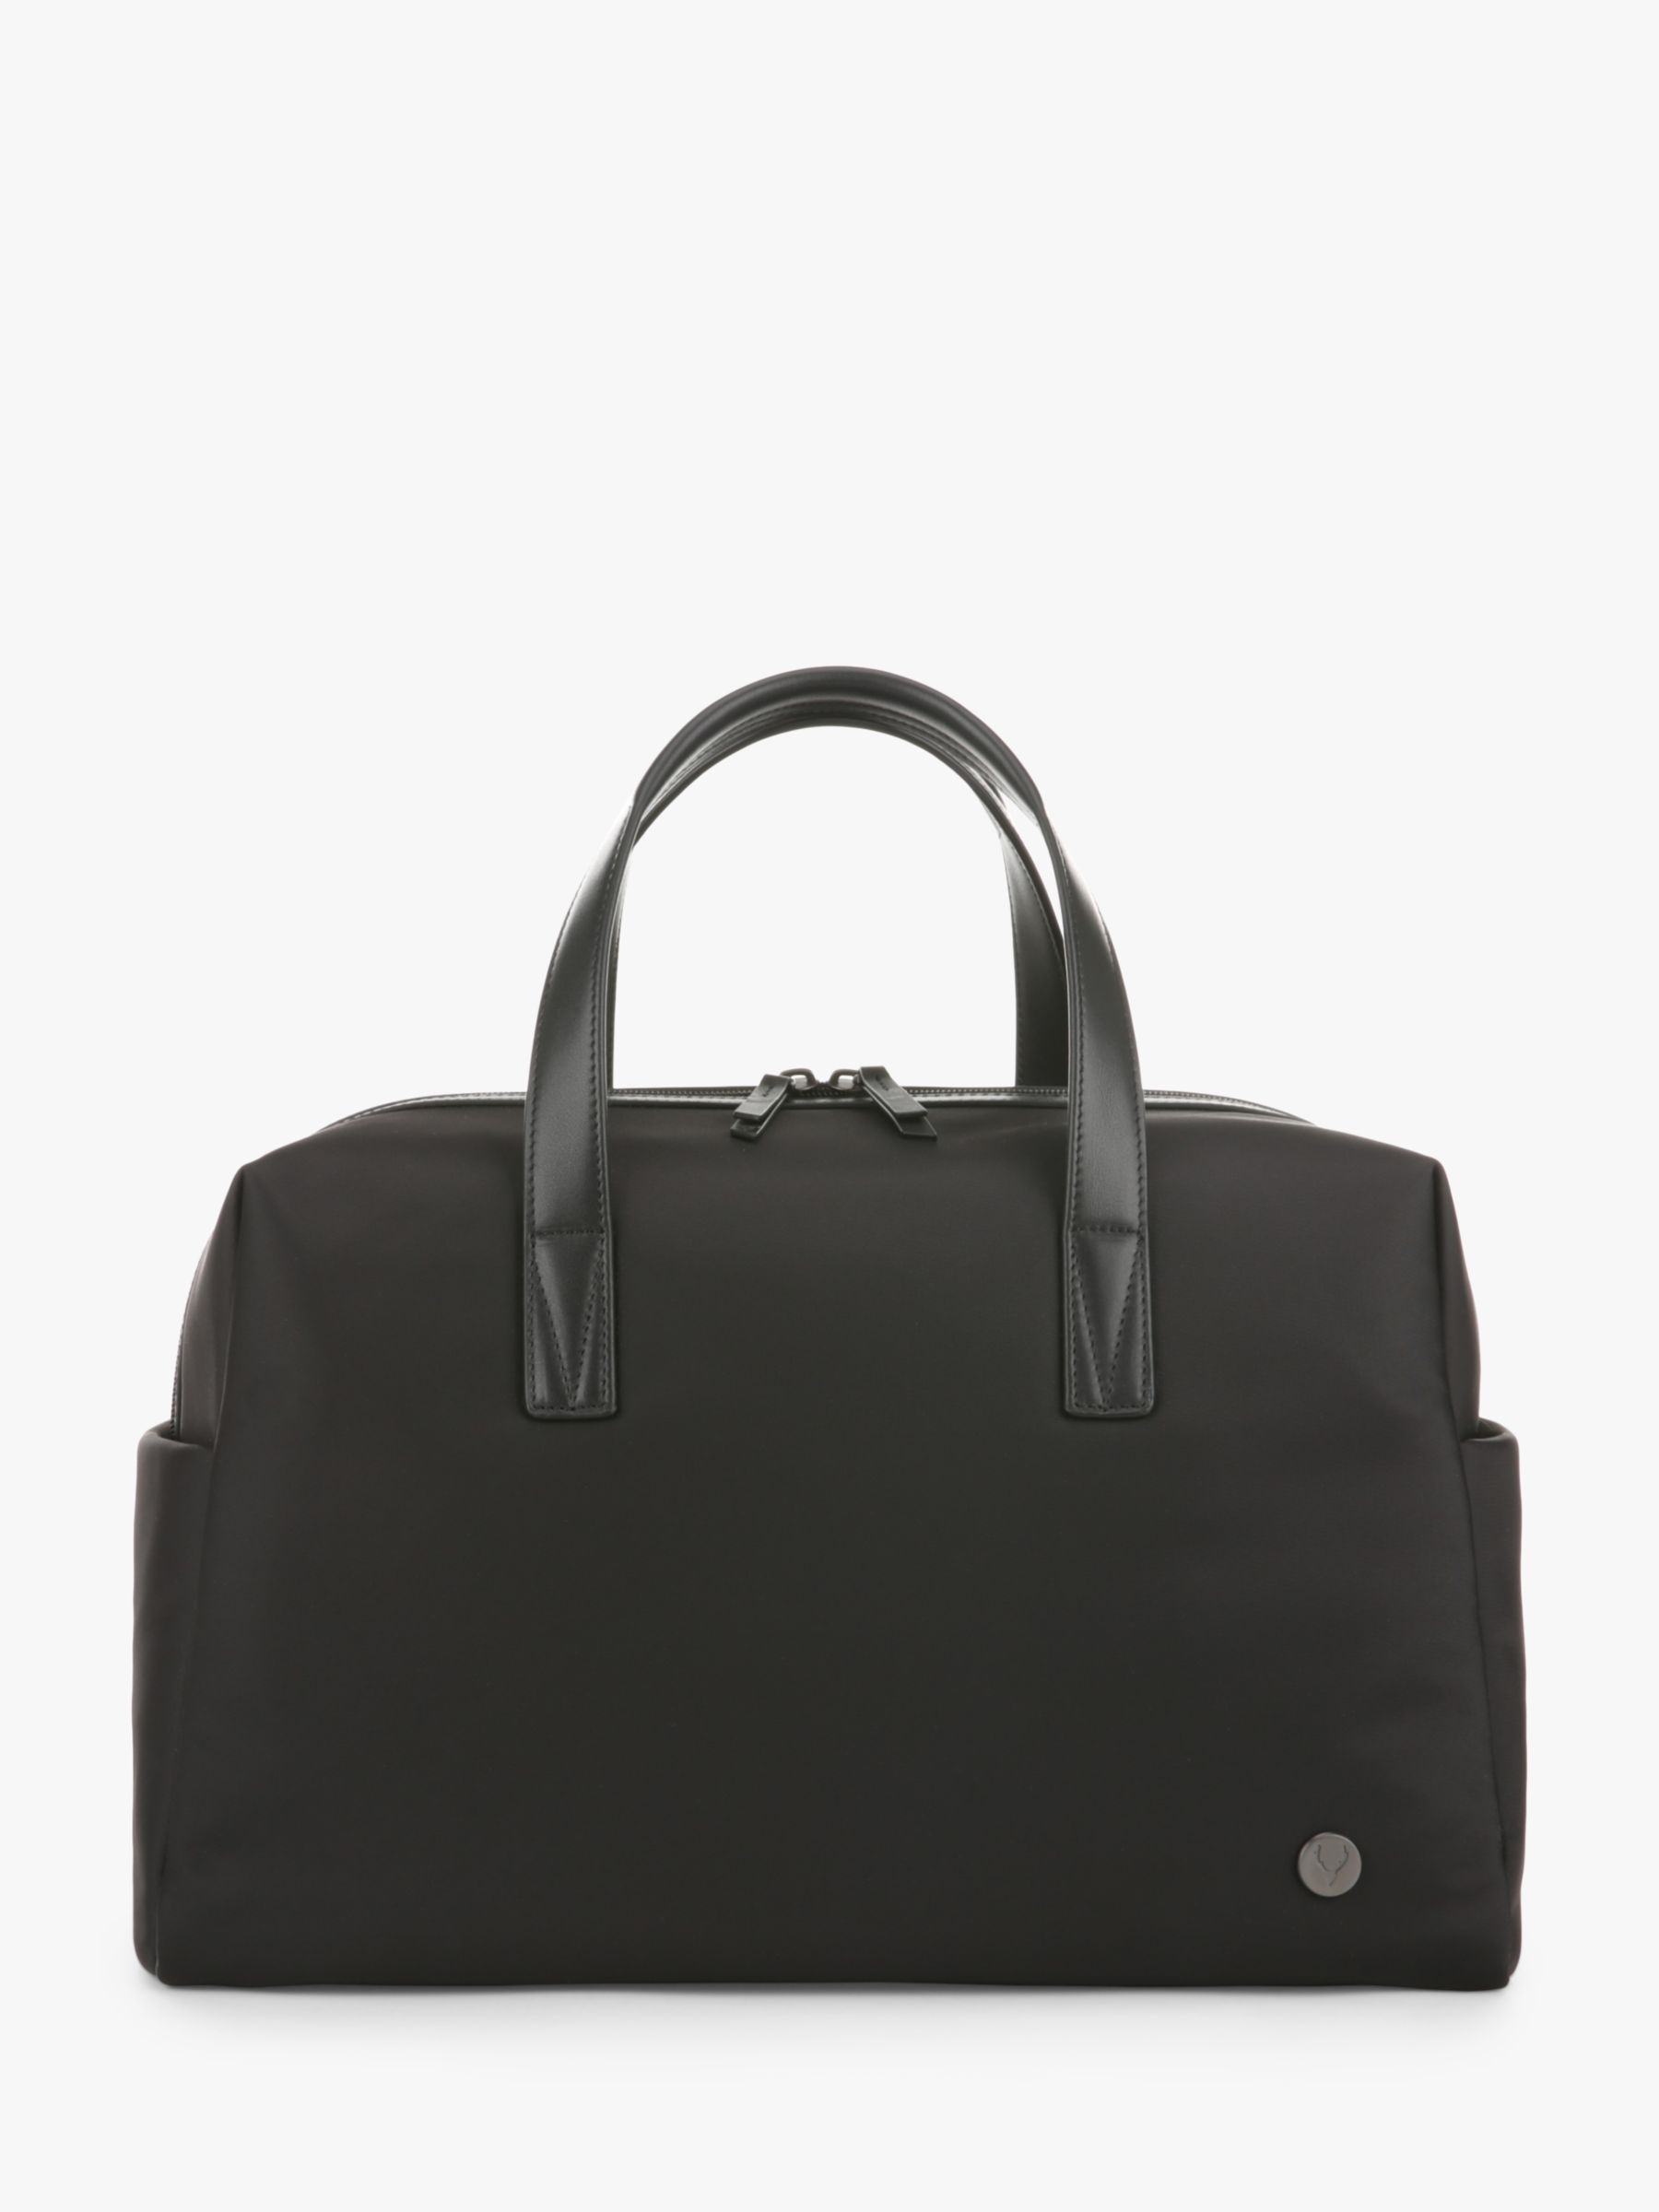 Ночная сумка Челси Antler, черный оригинальный легкий жесткий спиннер 20 дюймов черная ручная сумка